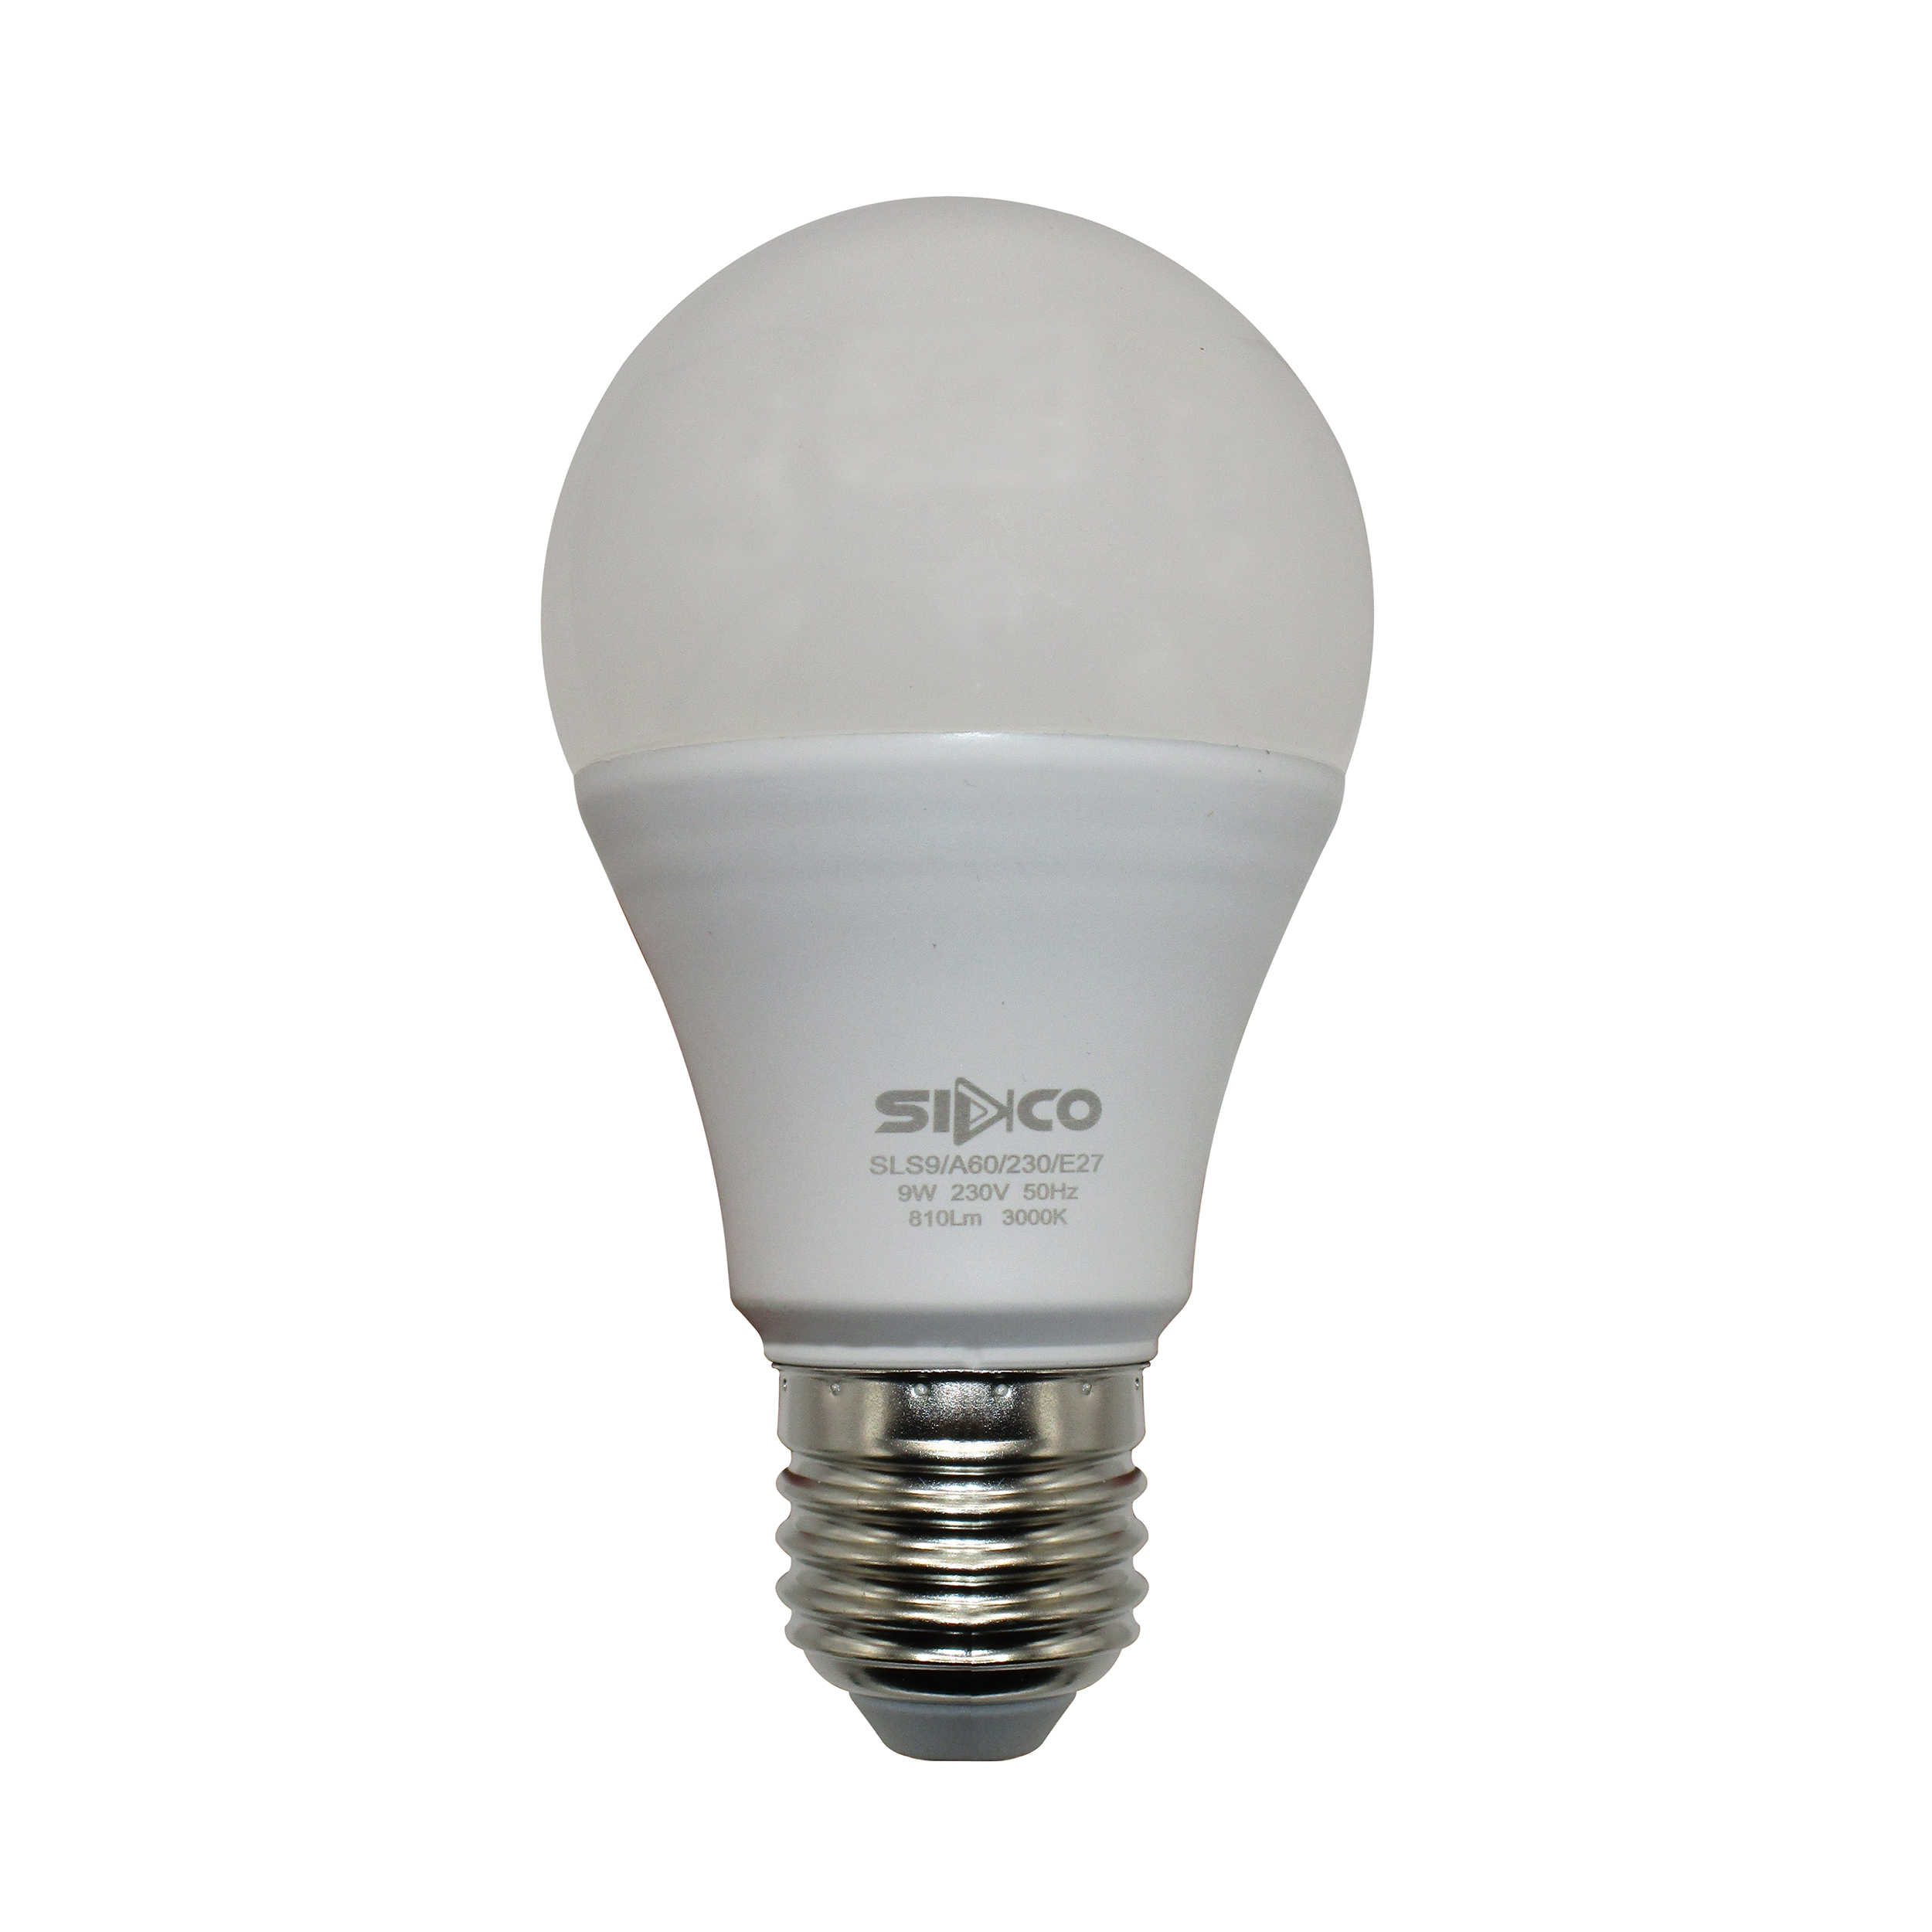 لامپ کم مصرف 9 وات سیدکو مدل Hob1 پایه E27